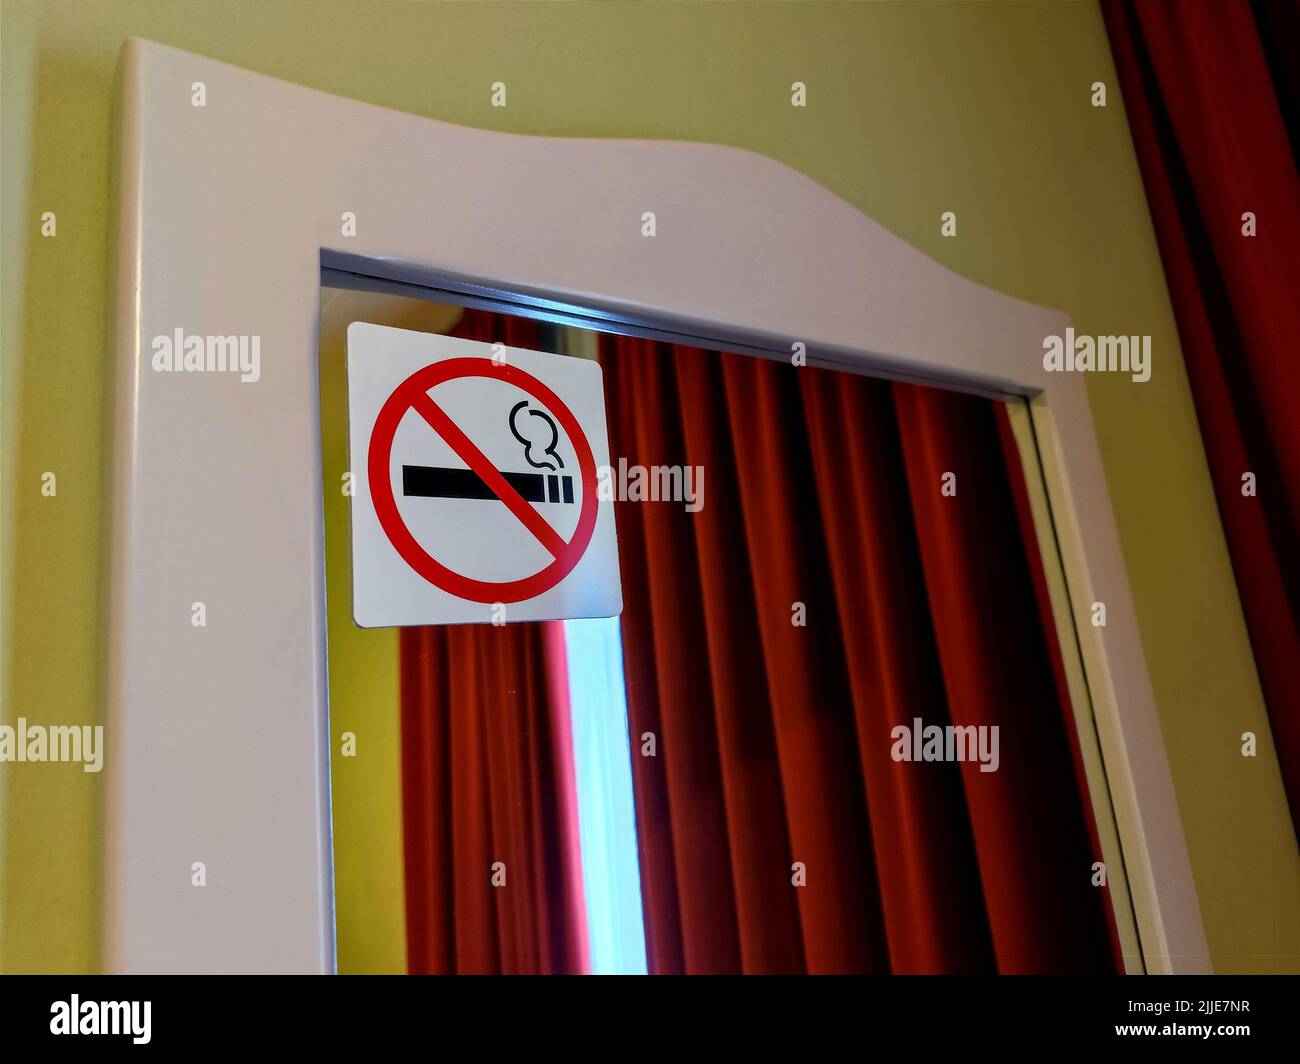 Étiquette non-fumeurs apposée sur un miroir dans une chambre d'hôtel. Il n'y a aucune personne ni marque commerciale dans la photo Banque D'Images